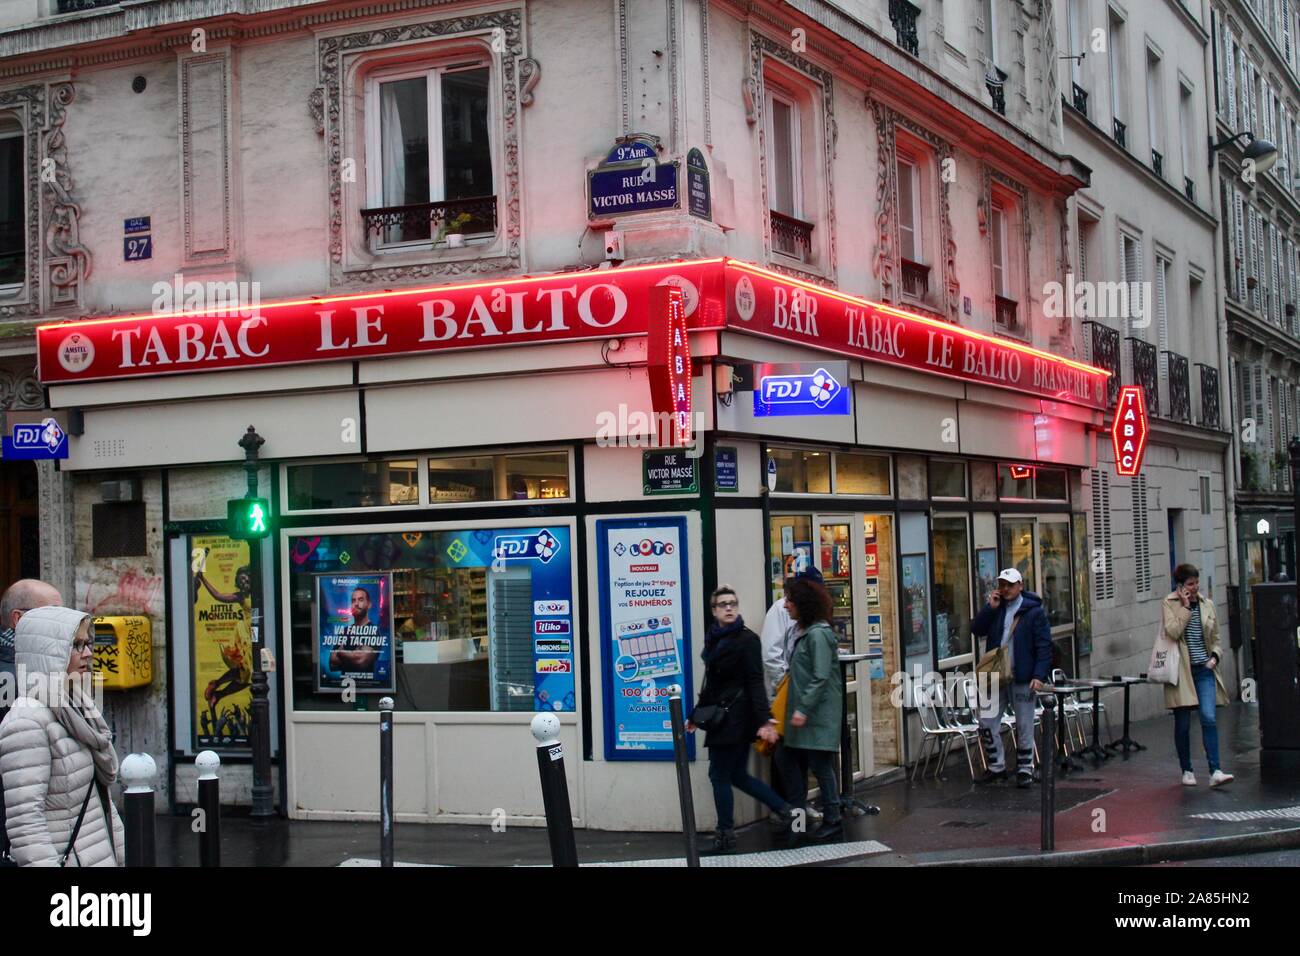 tabac le balto local small shop cafe bar paris france Stock Photo